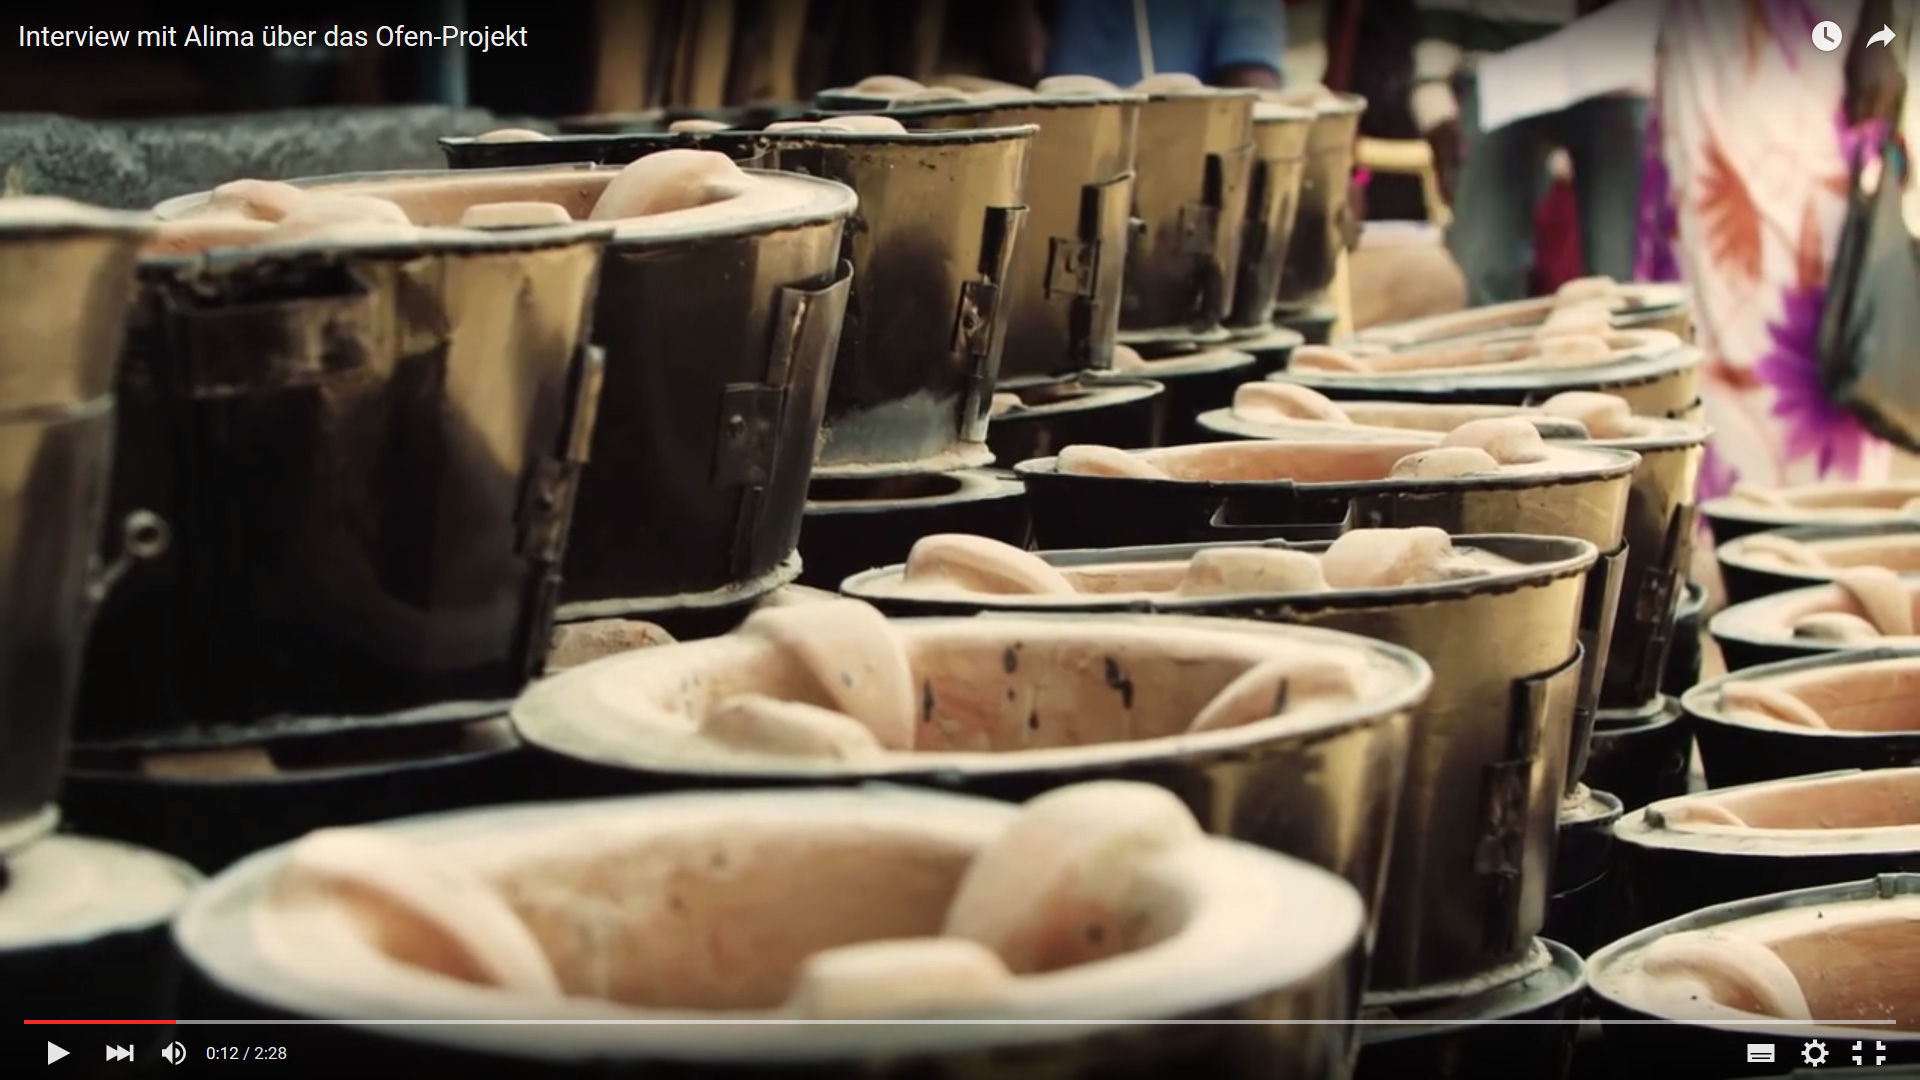 Standbild aus dem BMZ-Video über ein Ofen-Projekt für Flüchtlinge in Kenia